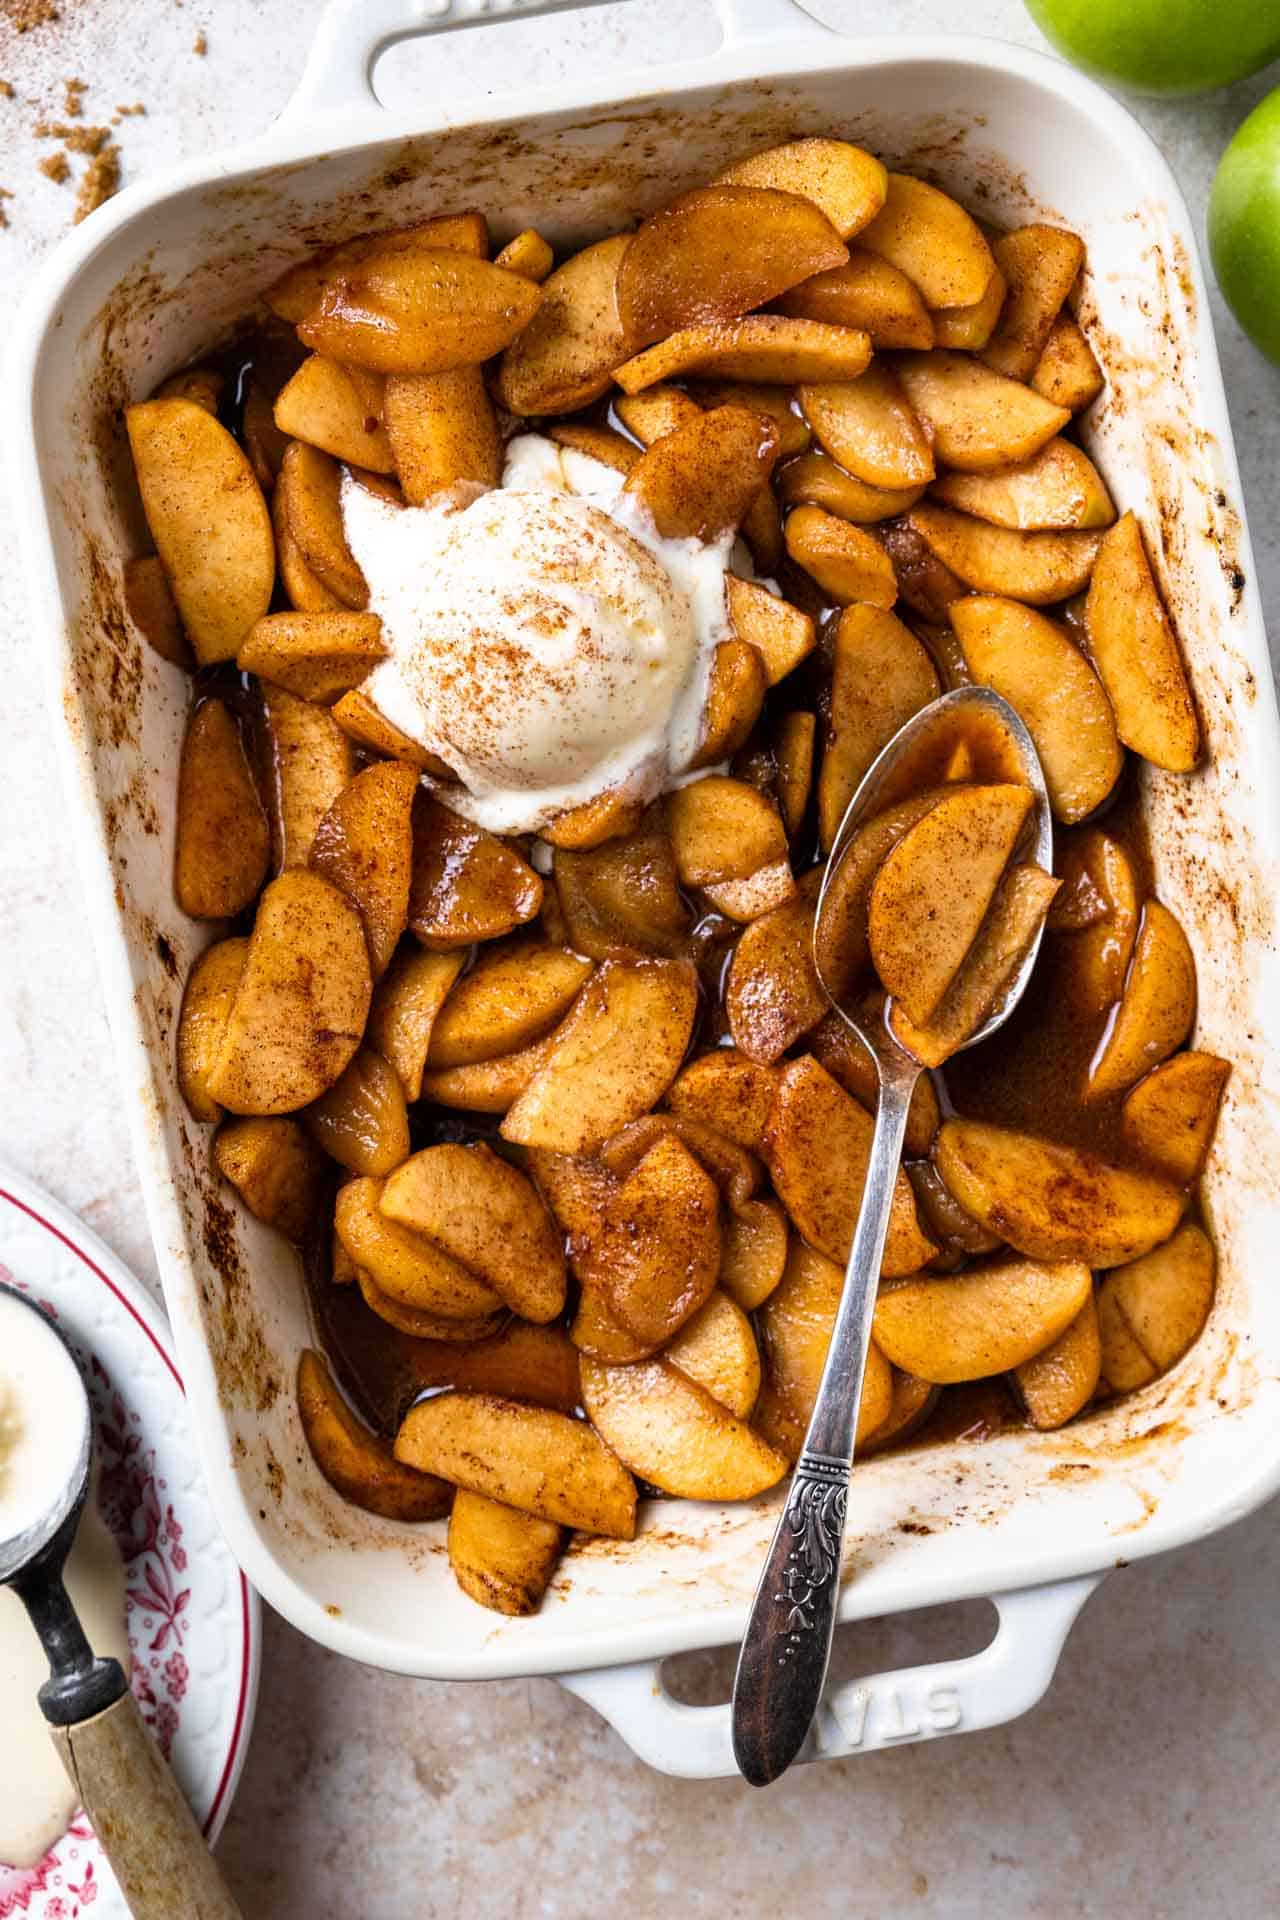 Plat à four rempli de pommes cuites nageant dans un sirop épicé à la cannelle et garni de glace à la vanille.